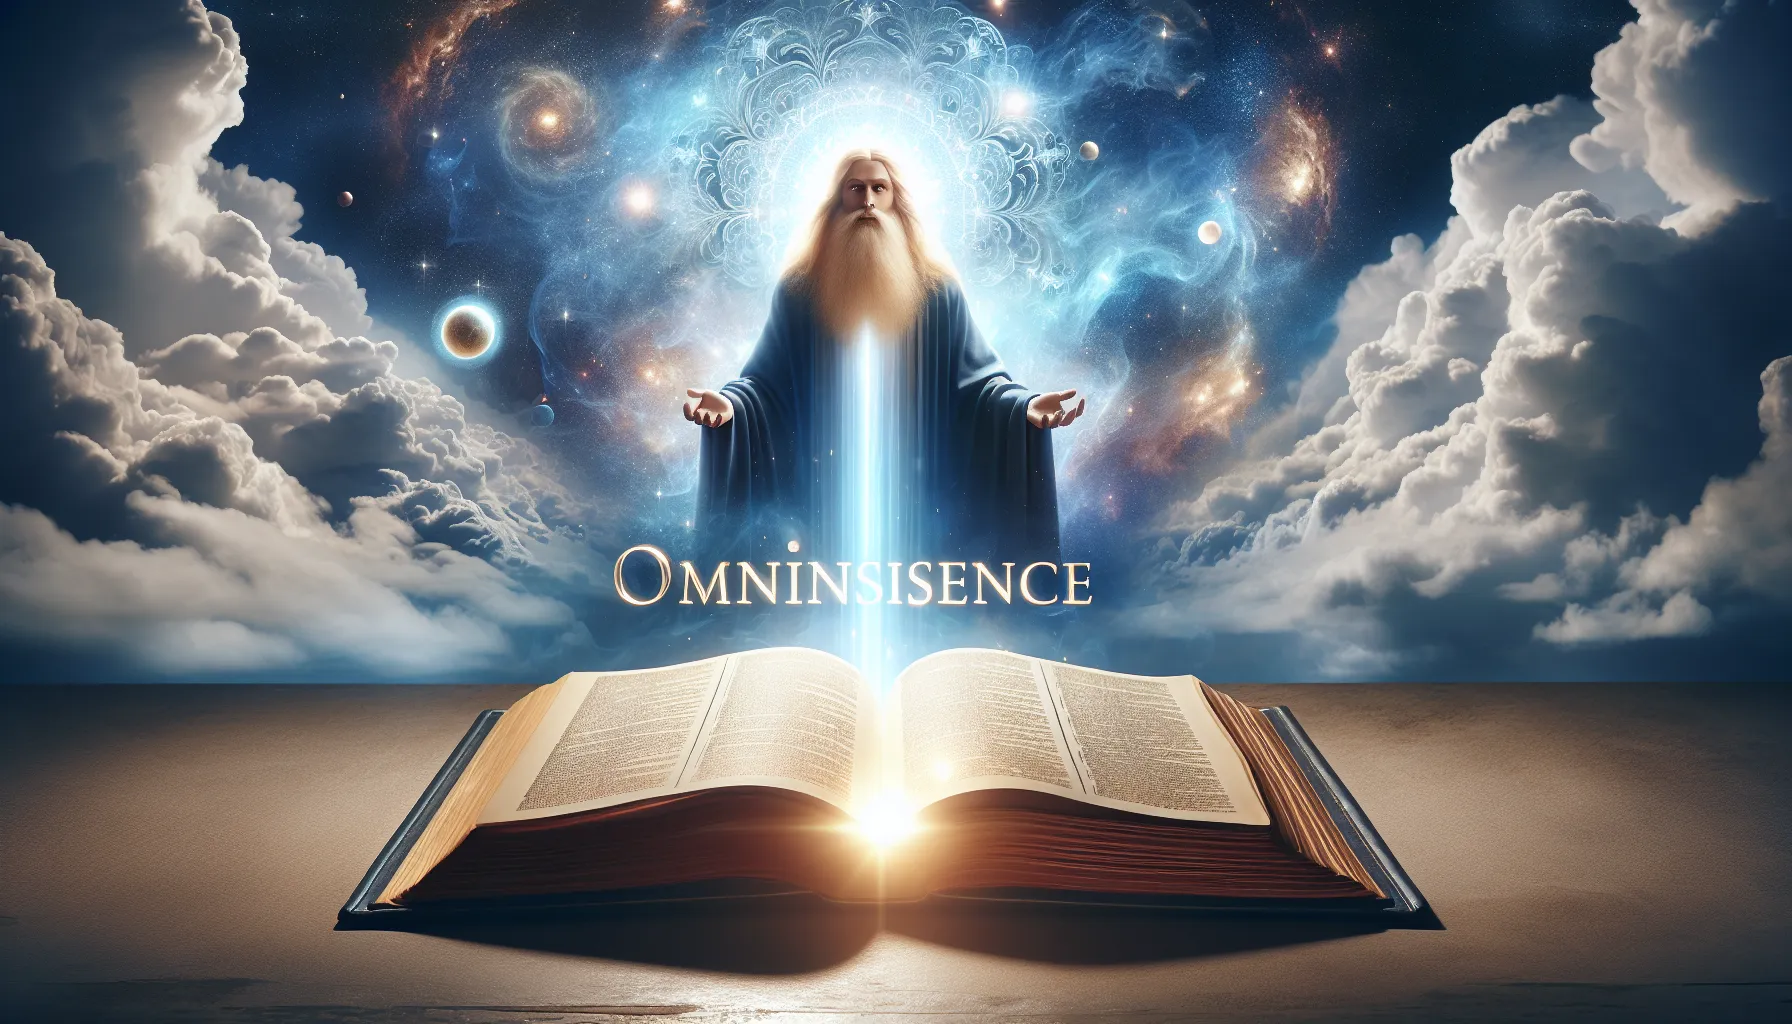 Una representación visual de la omnipresencia de Dios con un fondo celestial y una luz brillante iluminando un libro abierto con la palabra 'Omnisciencia' en primer plano.